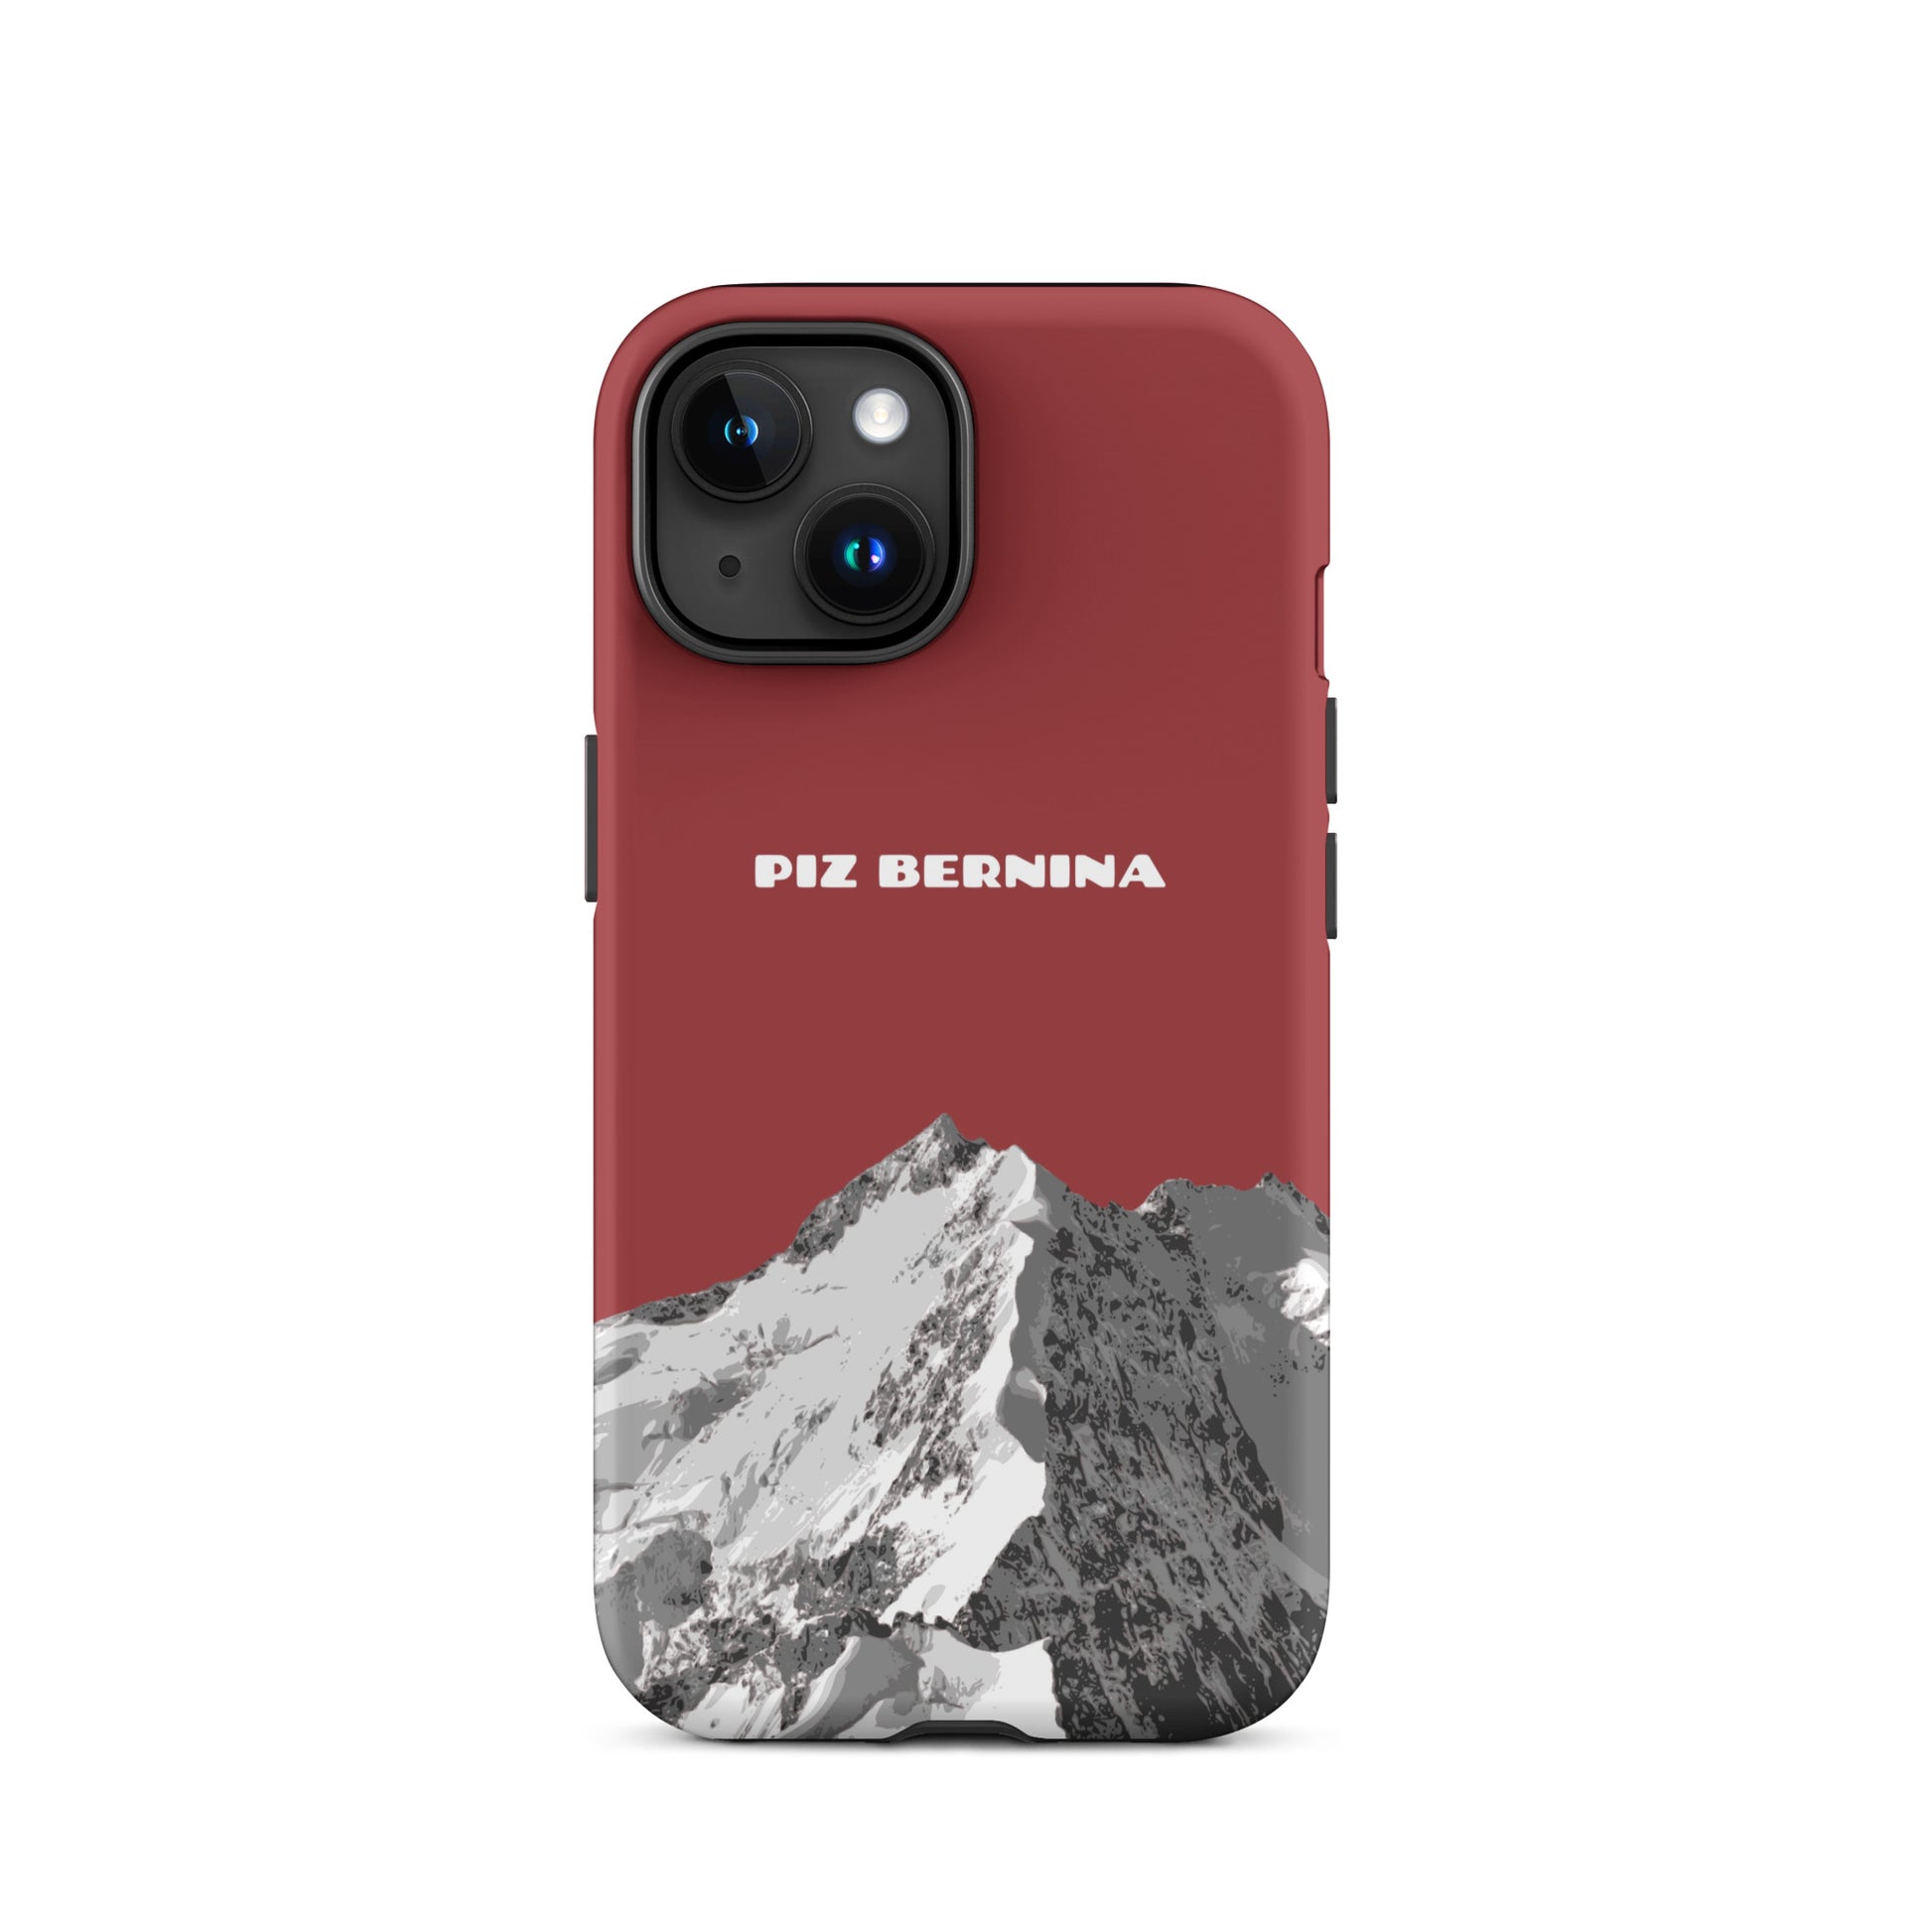 Hülle für das iPhone 15 von Apple in der Farbe Rot, dass den Piz Bernina in Graubünden zeigt.